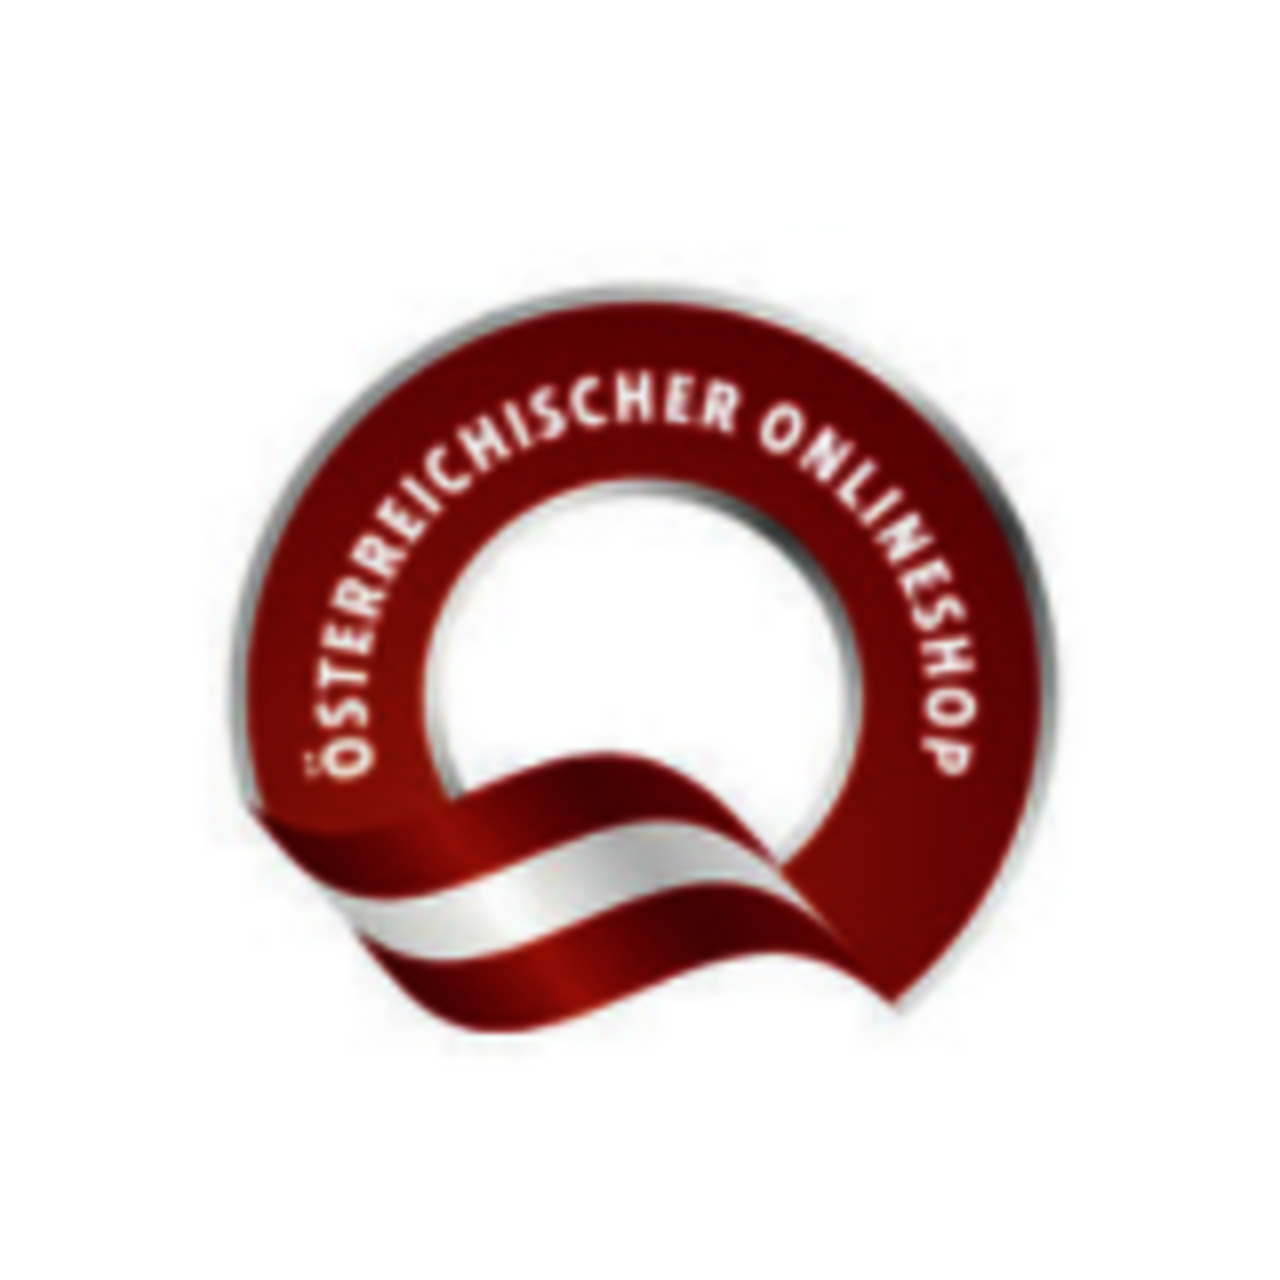 Österreichische Online Shop Zertifizierung, Zertifikat